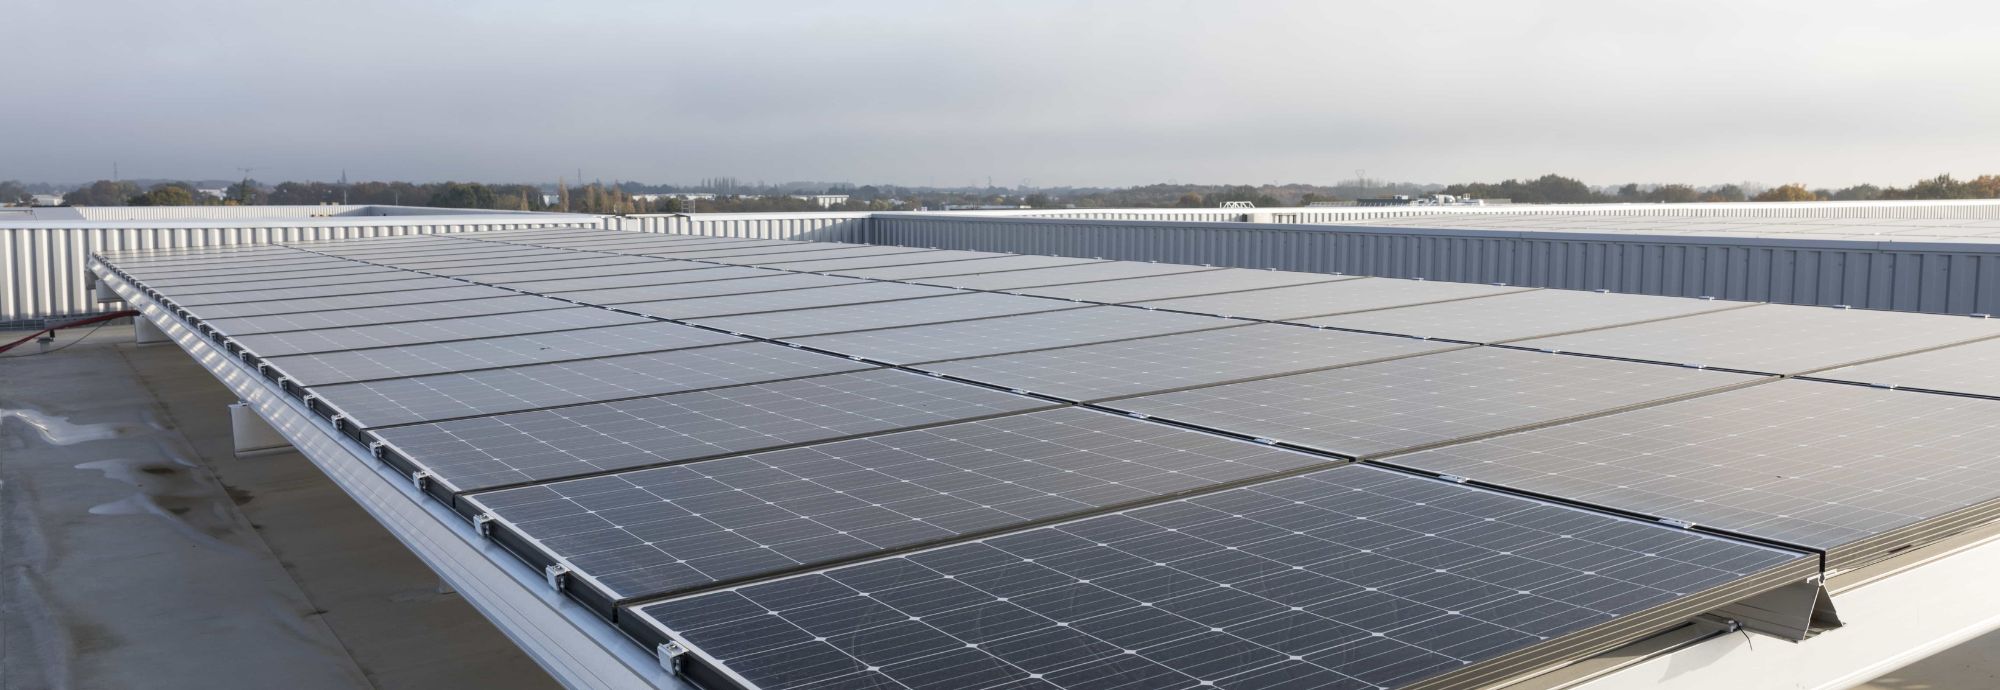 Panneaux Photovoltaiques sur le toit du MiN de Nantes